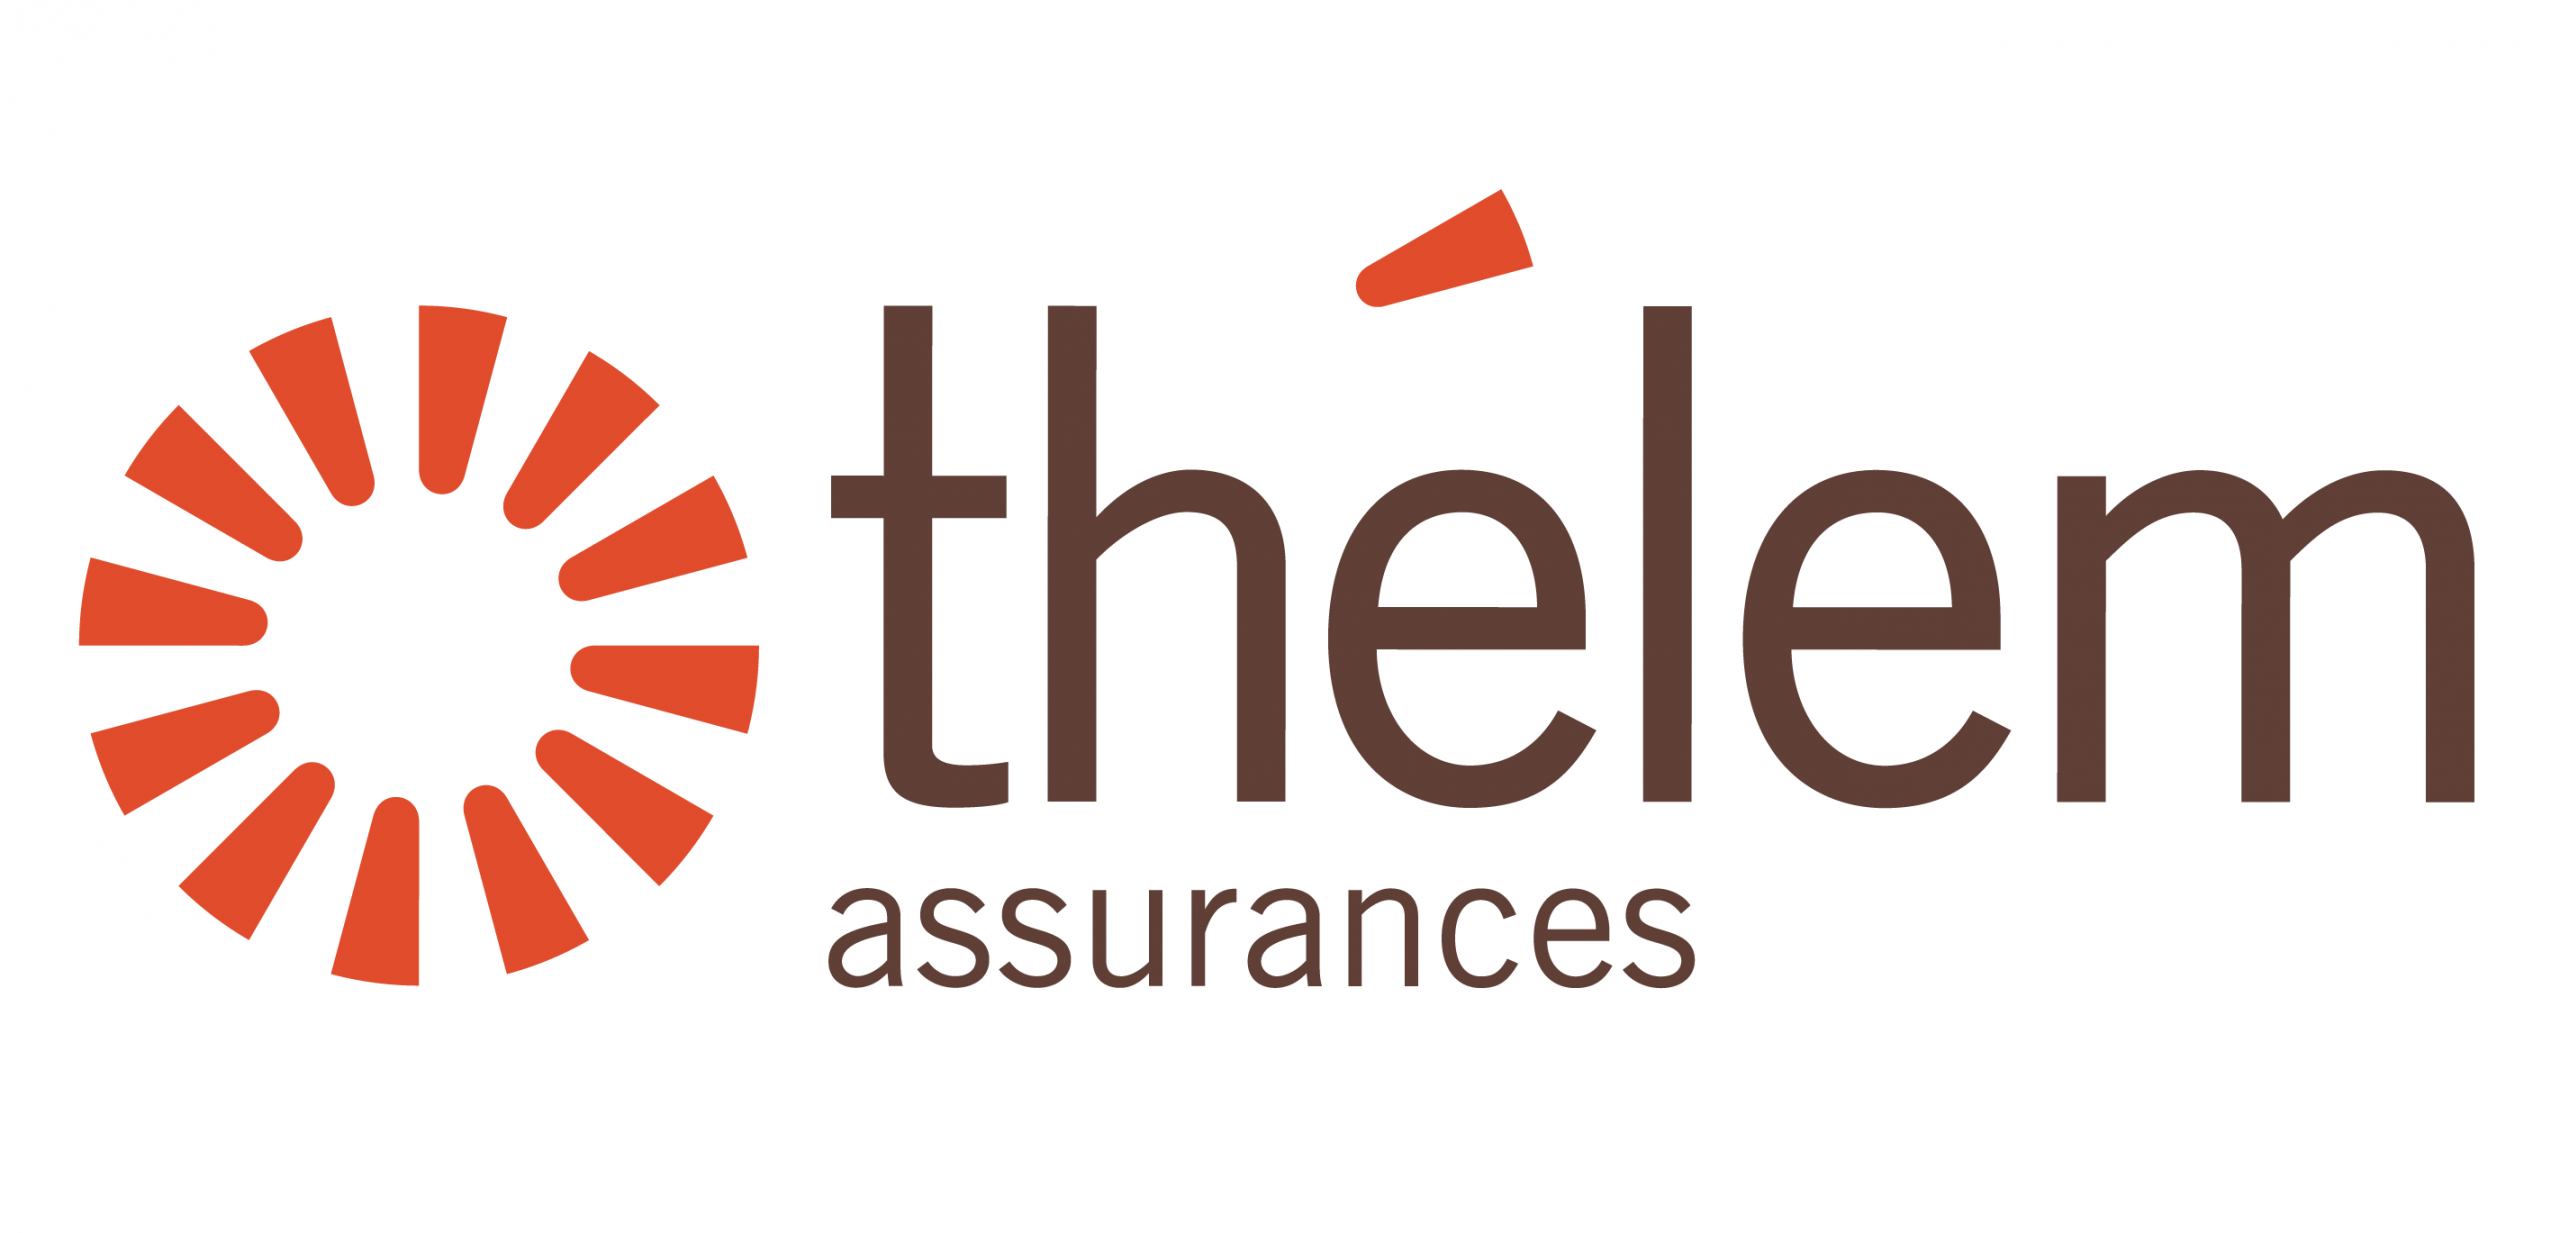 Logo Thélem assurances